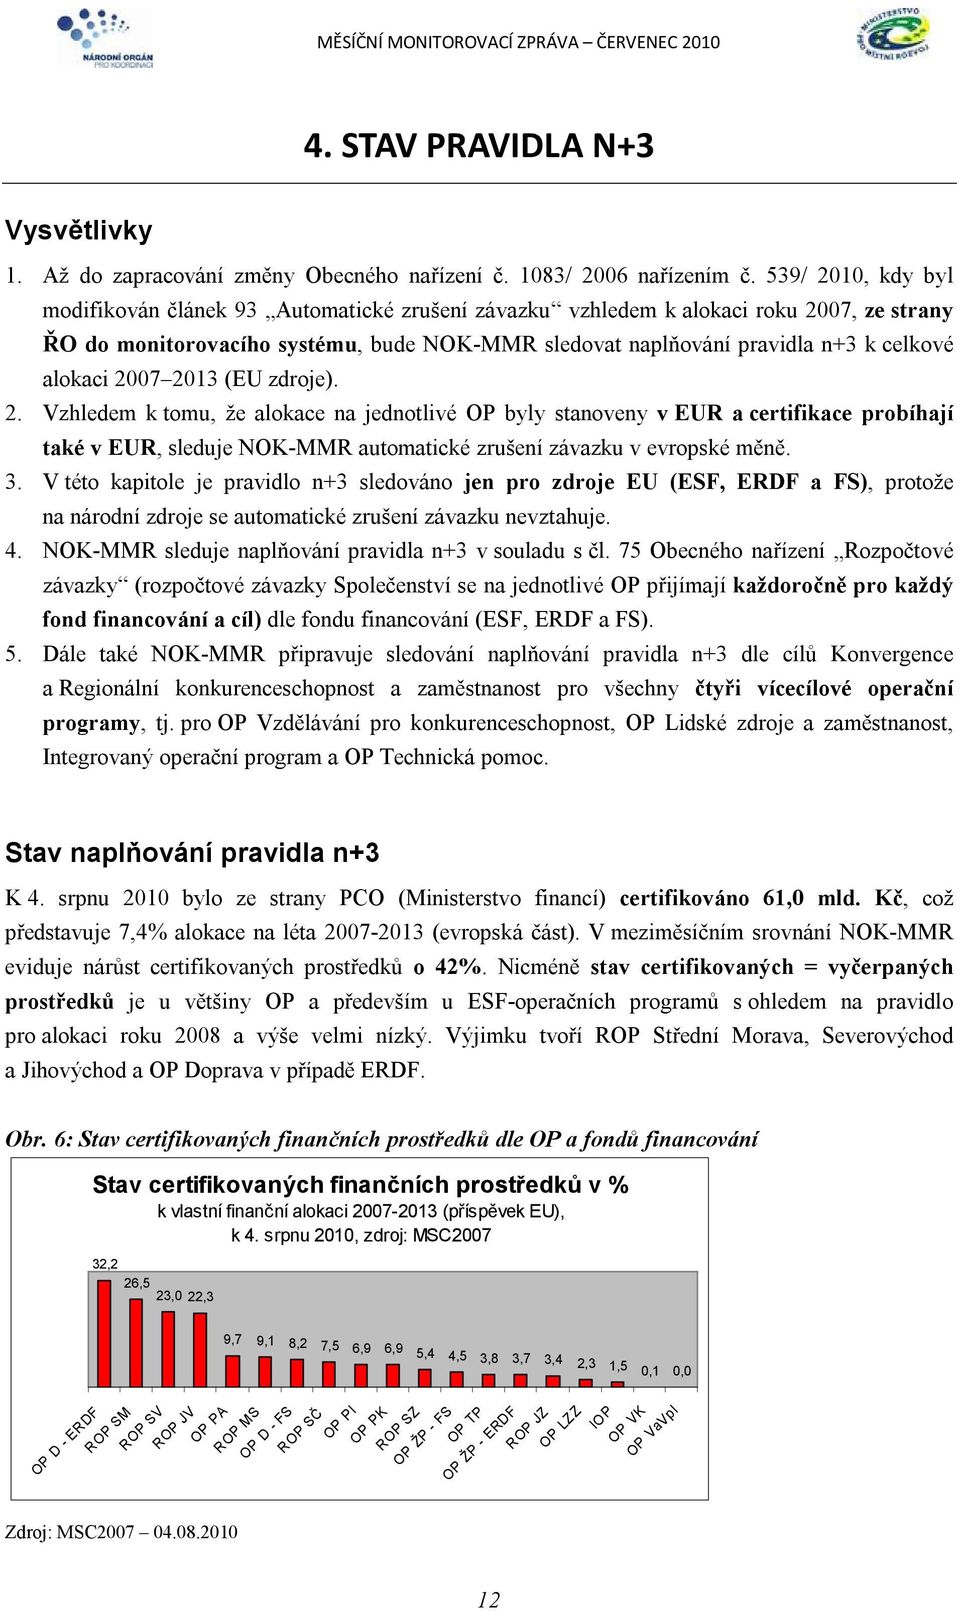 alokaci 2007 2013 (EU zdroje). 2. Vzhledem k tomu, že alokace na jednotlivé OP byly stanoveny v EUR a certifikace probíhají také v EUR, sleduje NOK-MMR automatické zrušení závazku v evropské měně. 3.